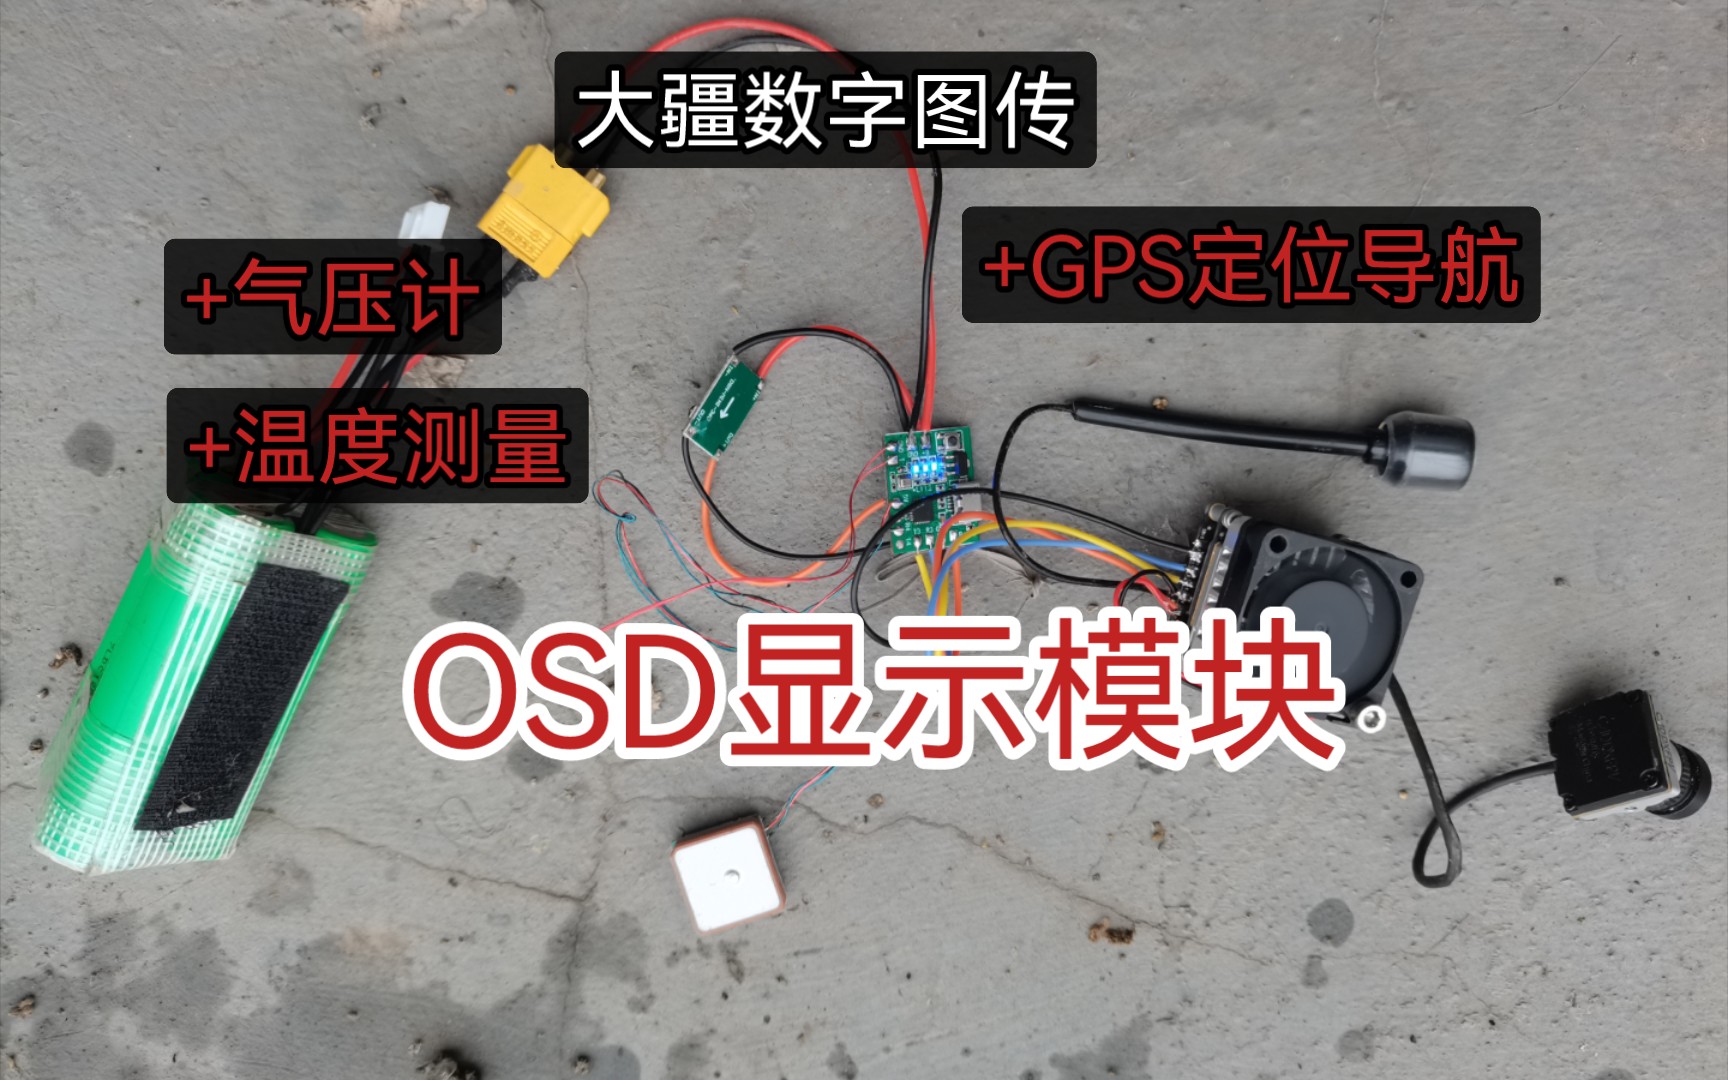 大疆OSD显示模块正式上线